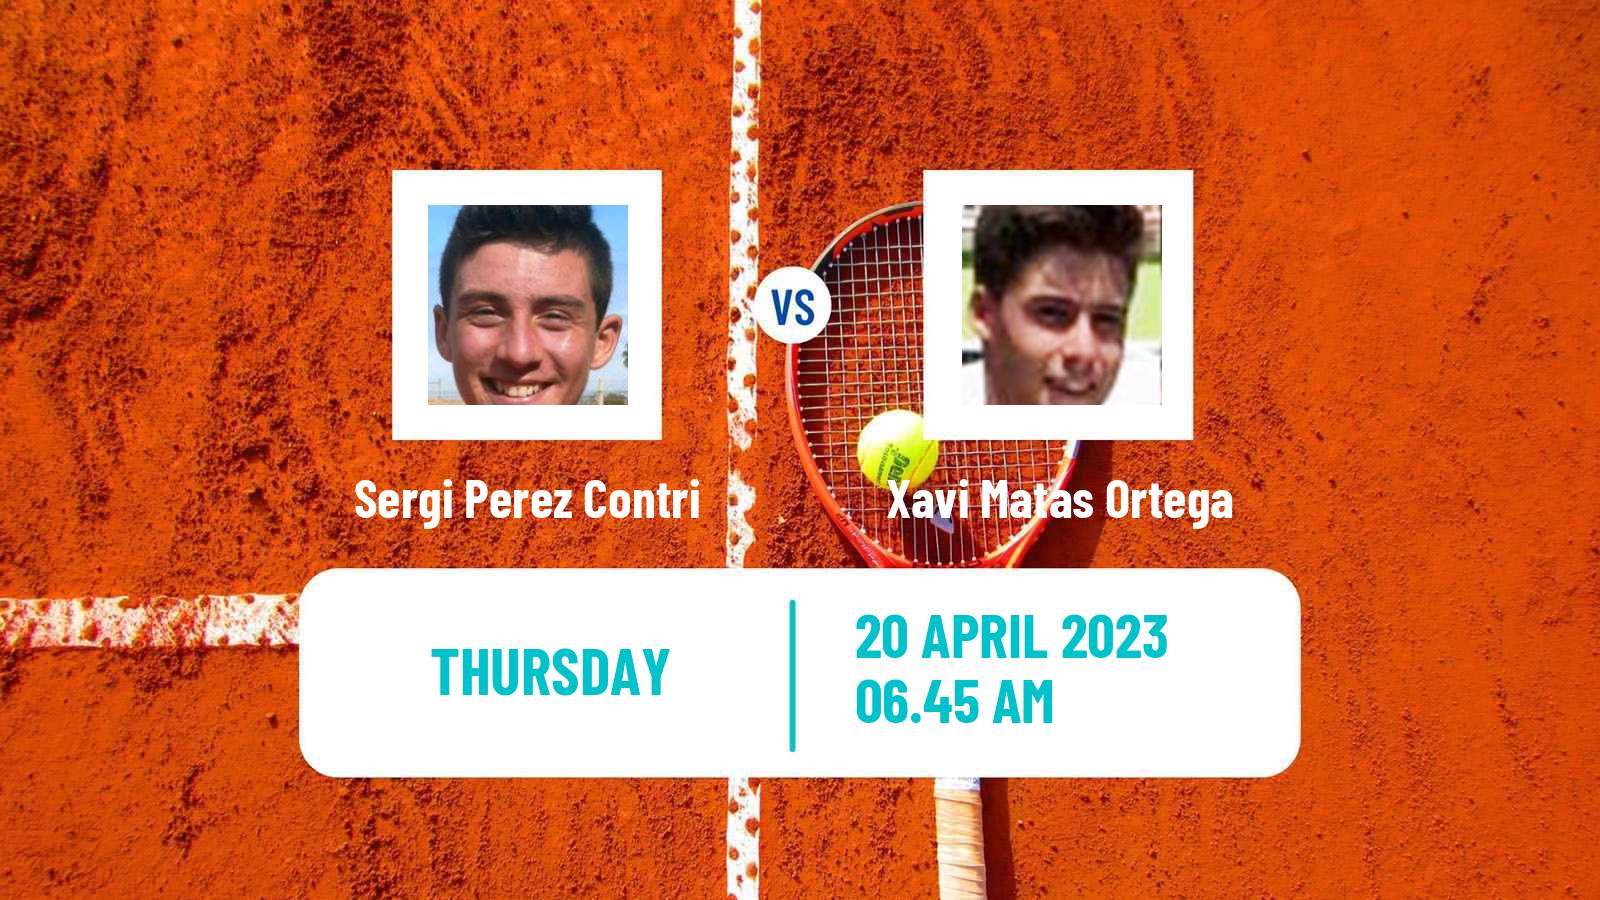 Tennis ITF Tournaments Sergi Perez Contri - Xavi Matas Ortega